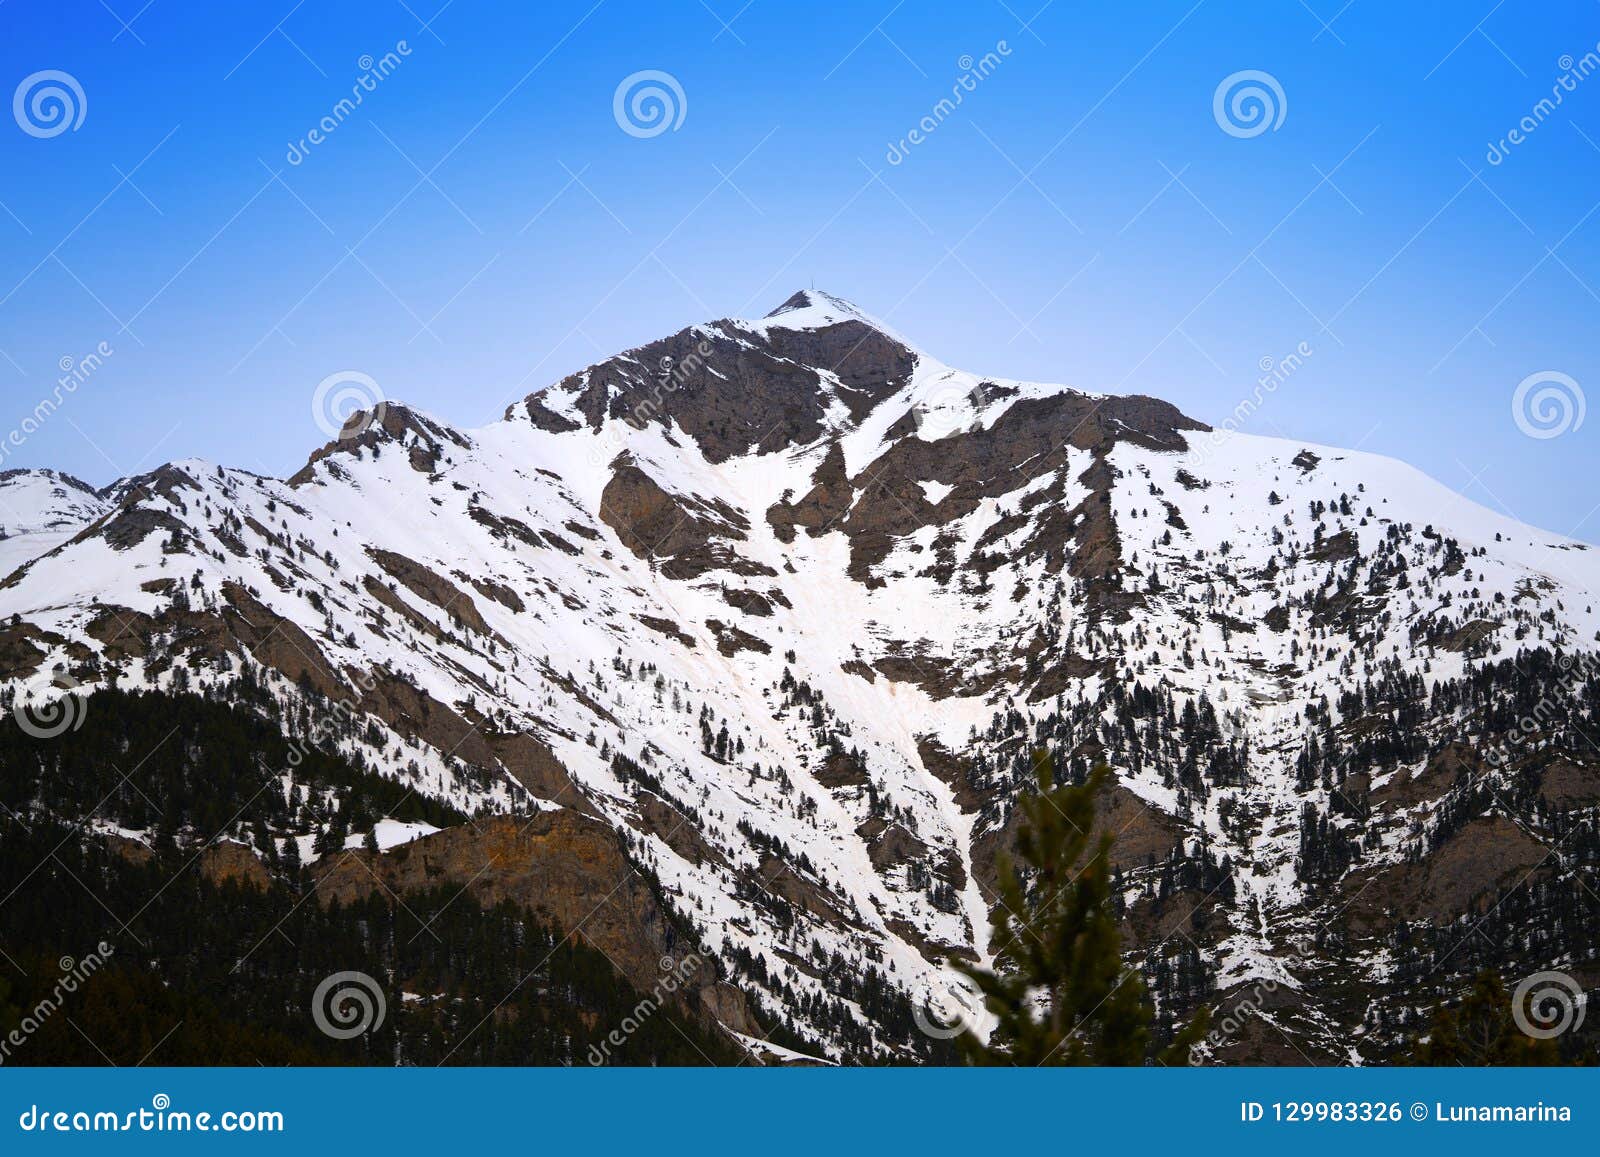 pal ski resort in andorra pyrenees